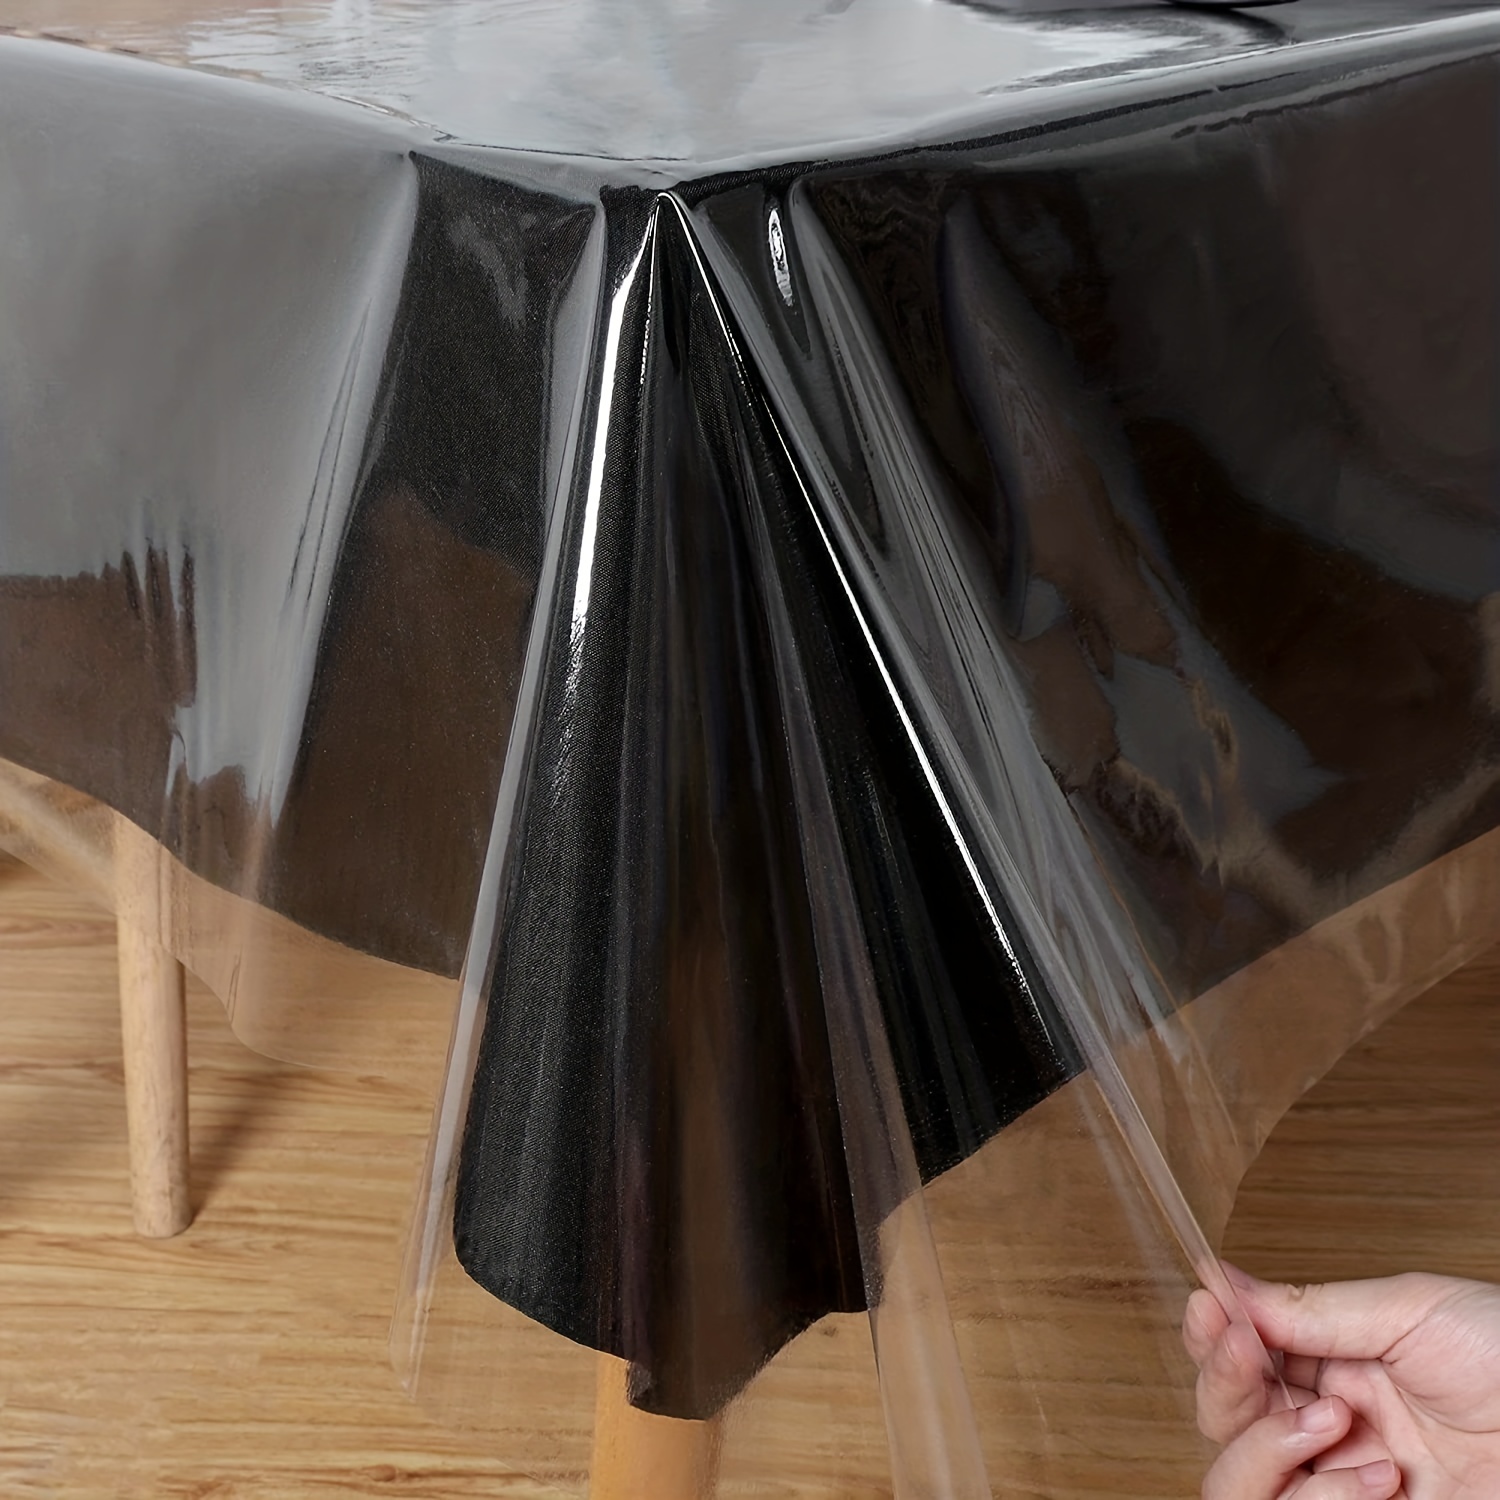 Nappe en PVC nappe transparente couverture en plastique résistant à l'huile  nappes à manger couverture de Table en verre doux tissu cuisine 1.0mm